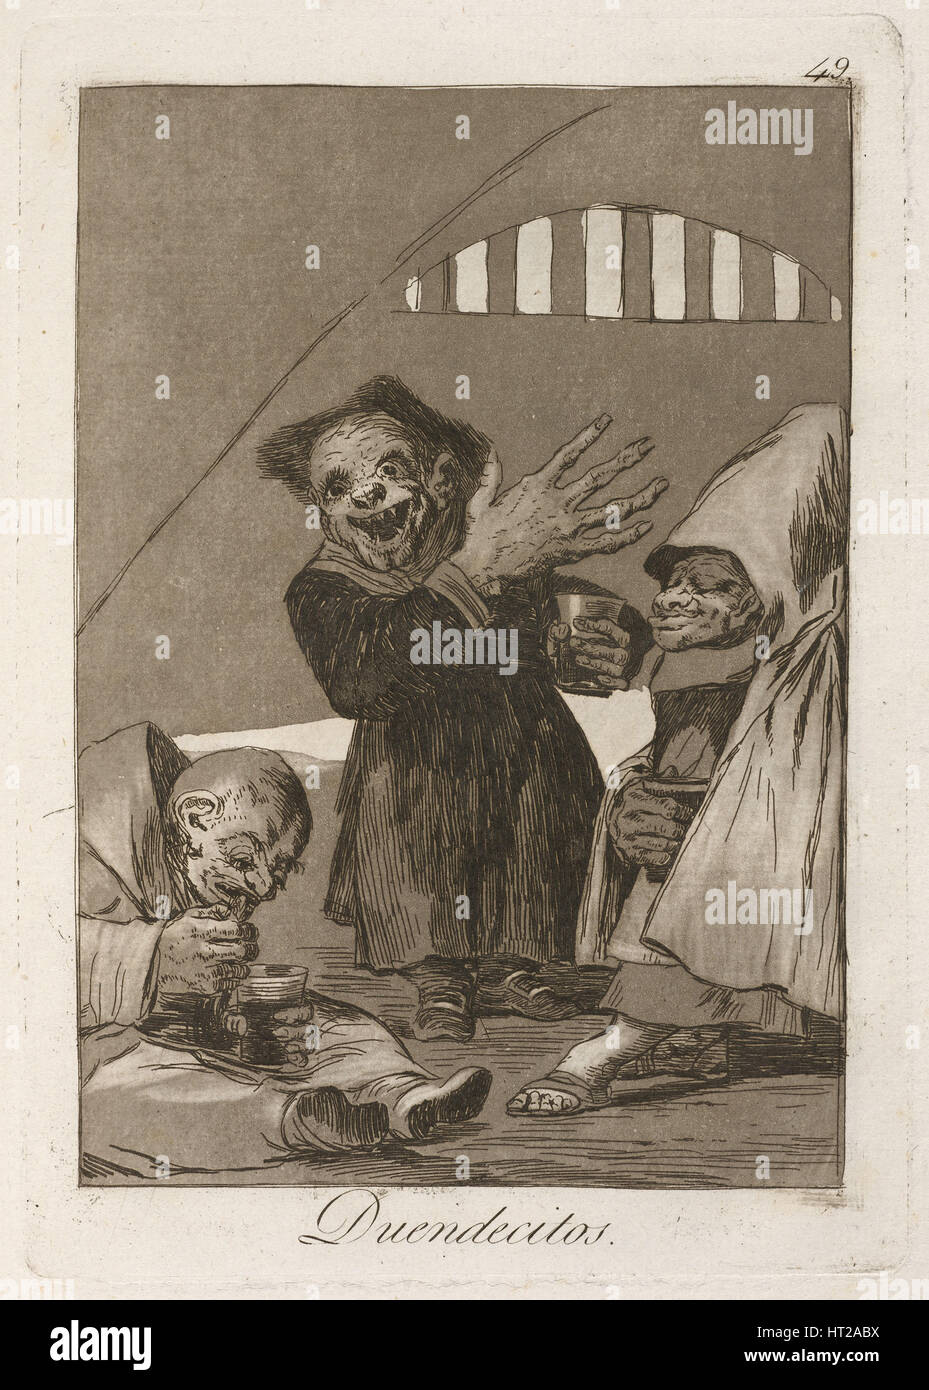 Duendecitos. (Hobgoblins). From Los Caprichos, 1797-1798. Artist: Goya, Francisco, de (1746-1828) Stock Photo